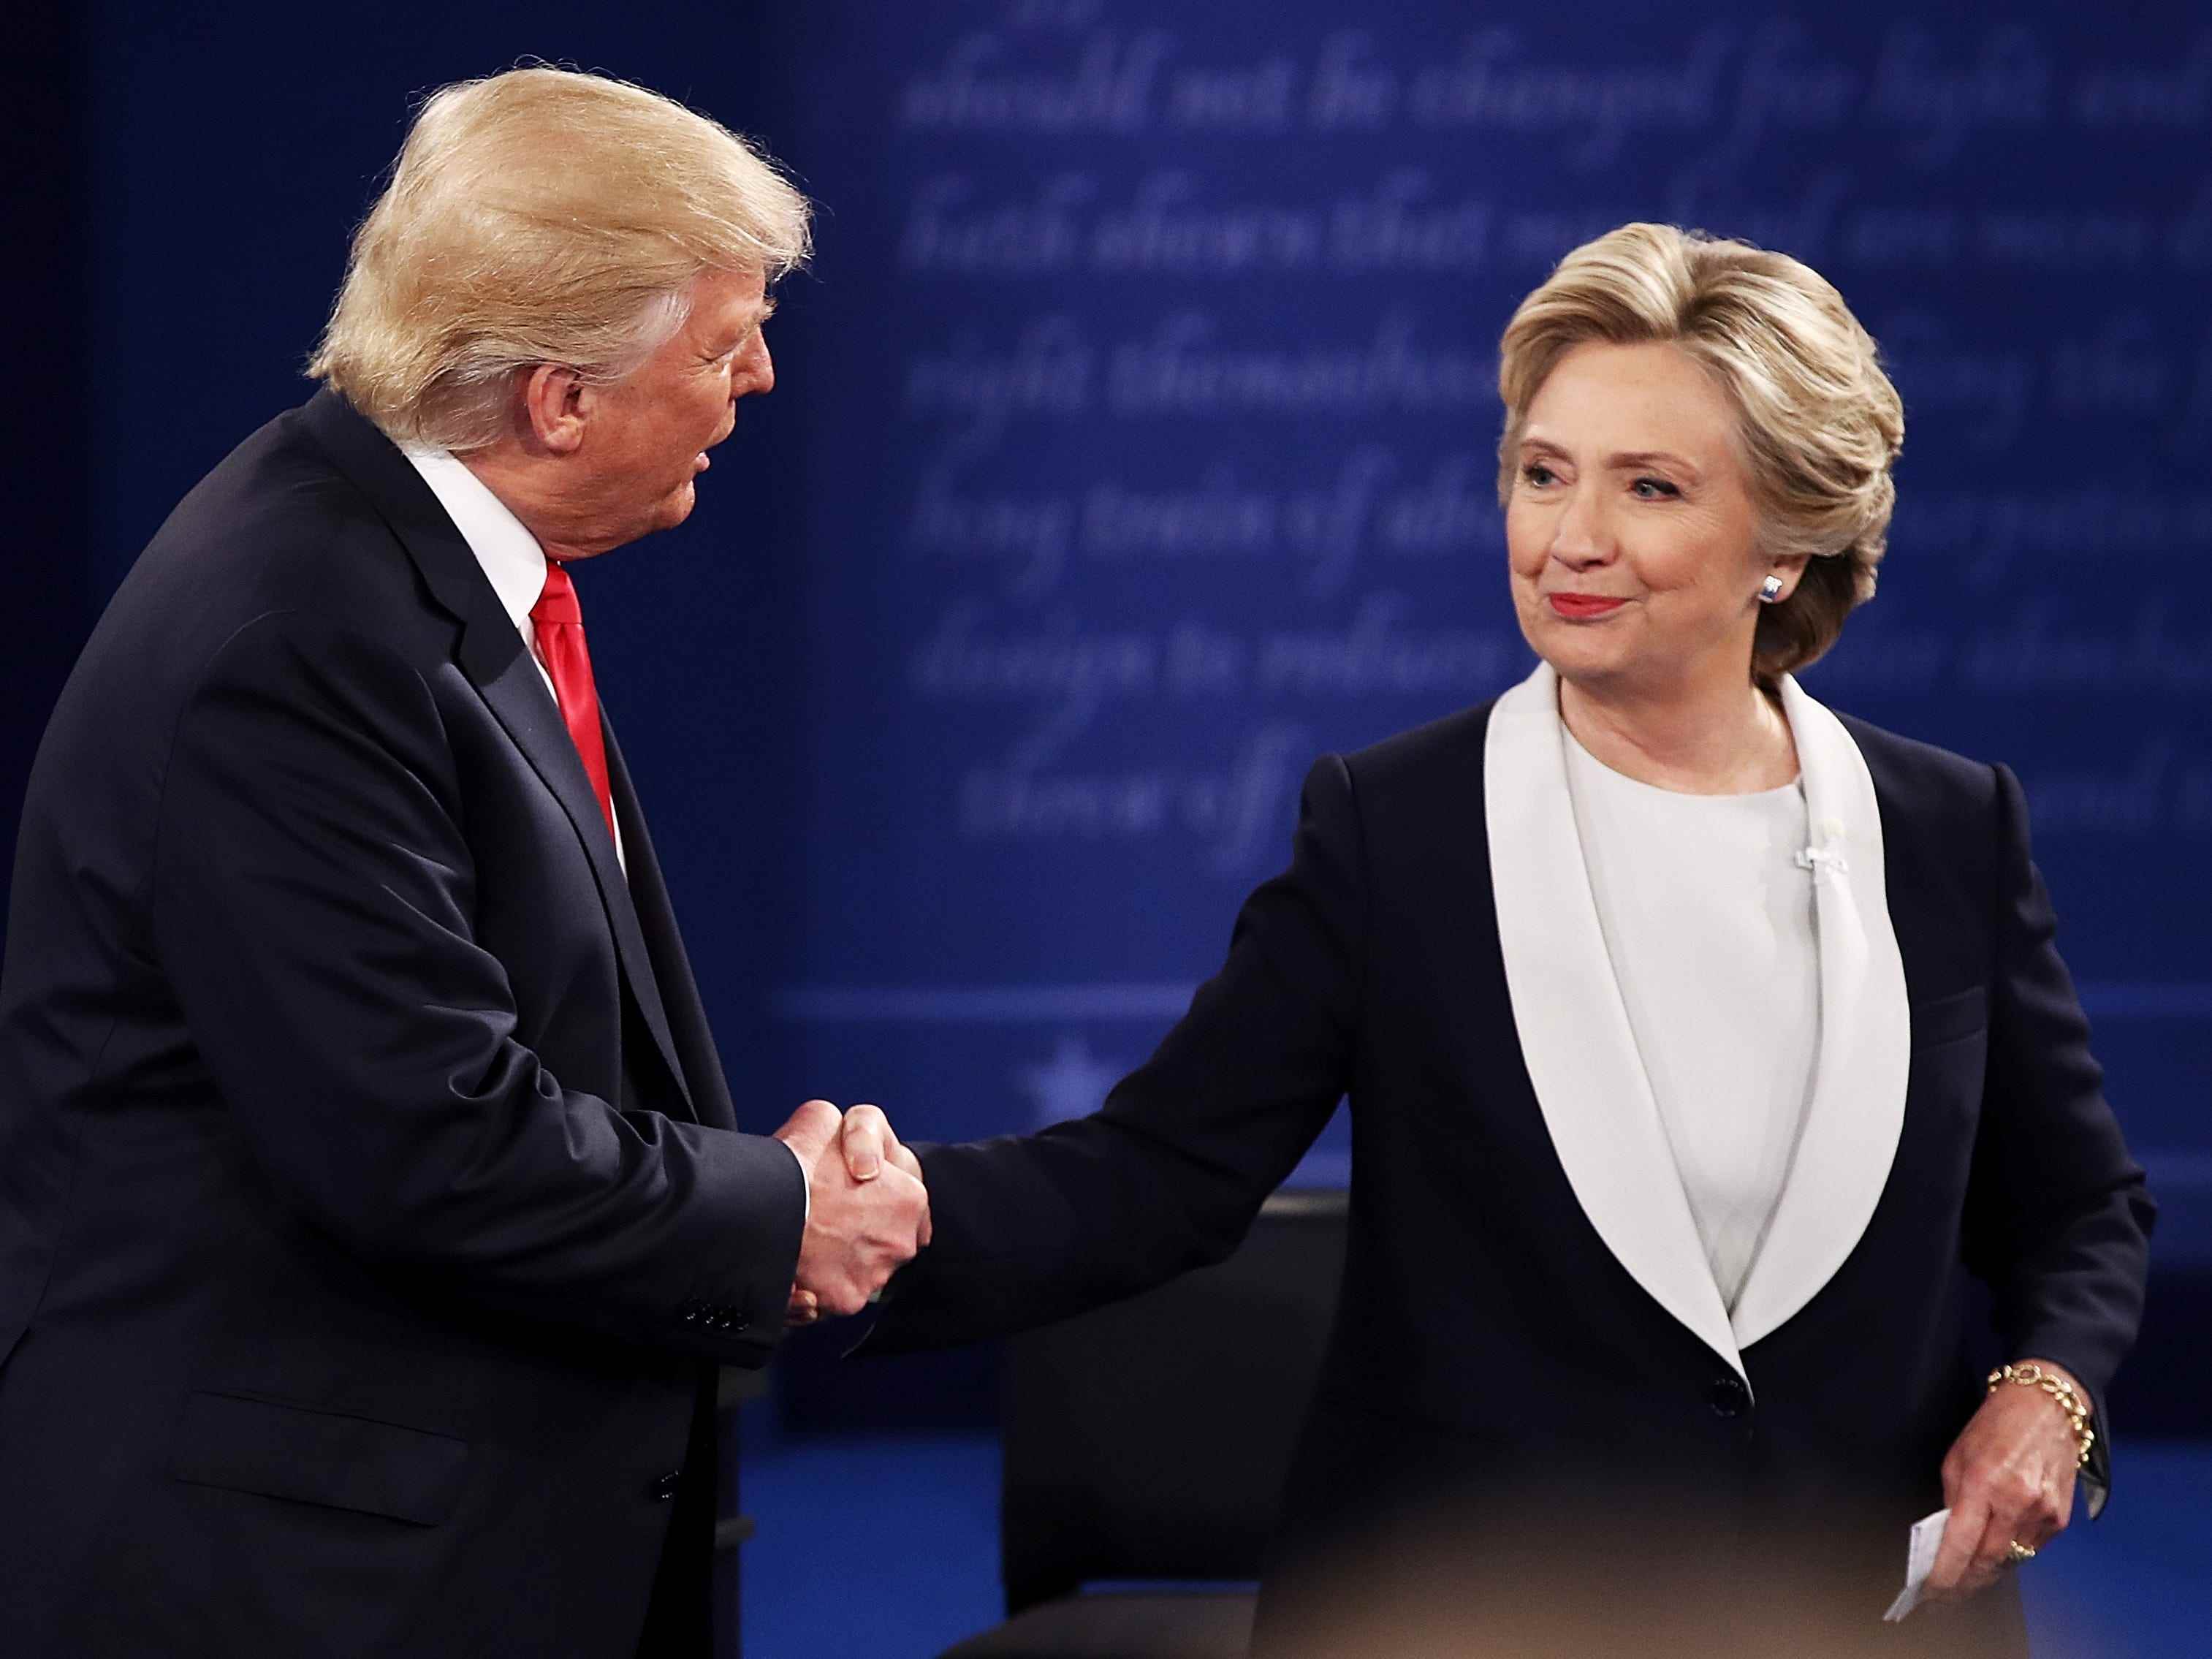 Der republikanische Präsidentschaftskandidat Donald Trump (L) schüttelt der demokratischen Präsidentschaftskandidaten, der ehemaligen Außenministerin Hillary Clinton, während der Rathausdebatte an der Washington University am 9. Oktober 2016 in St. Louis, Missouri, die Hand.